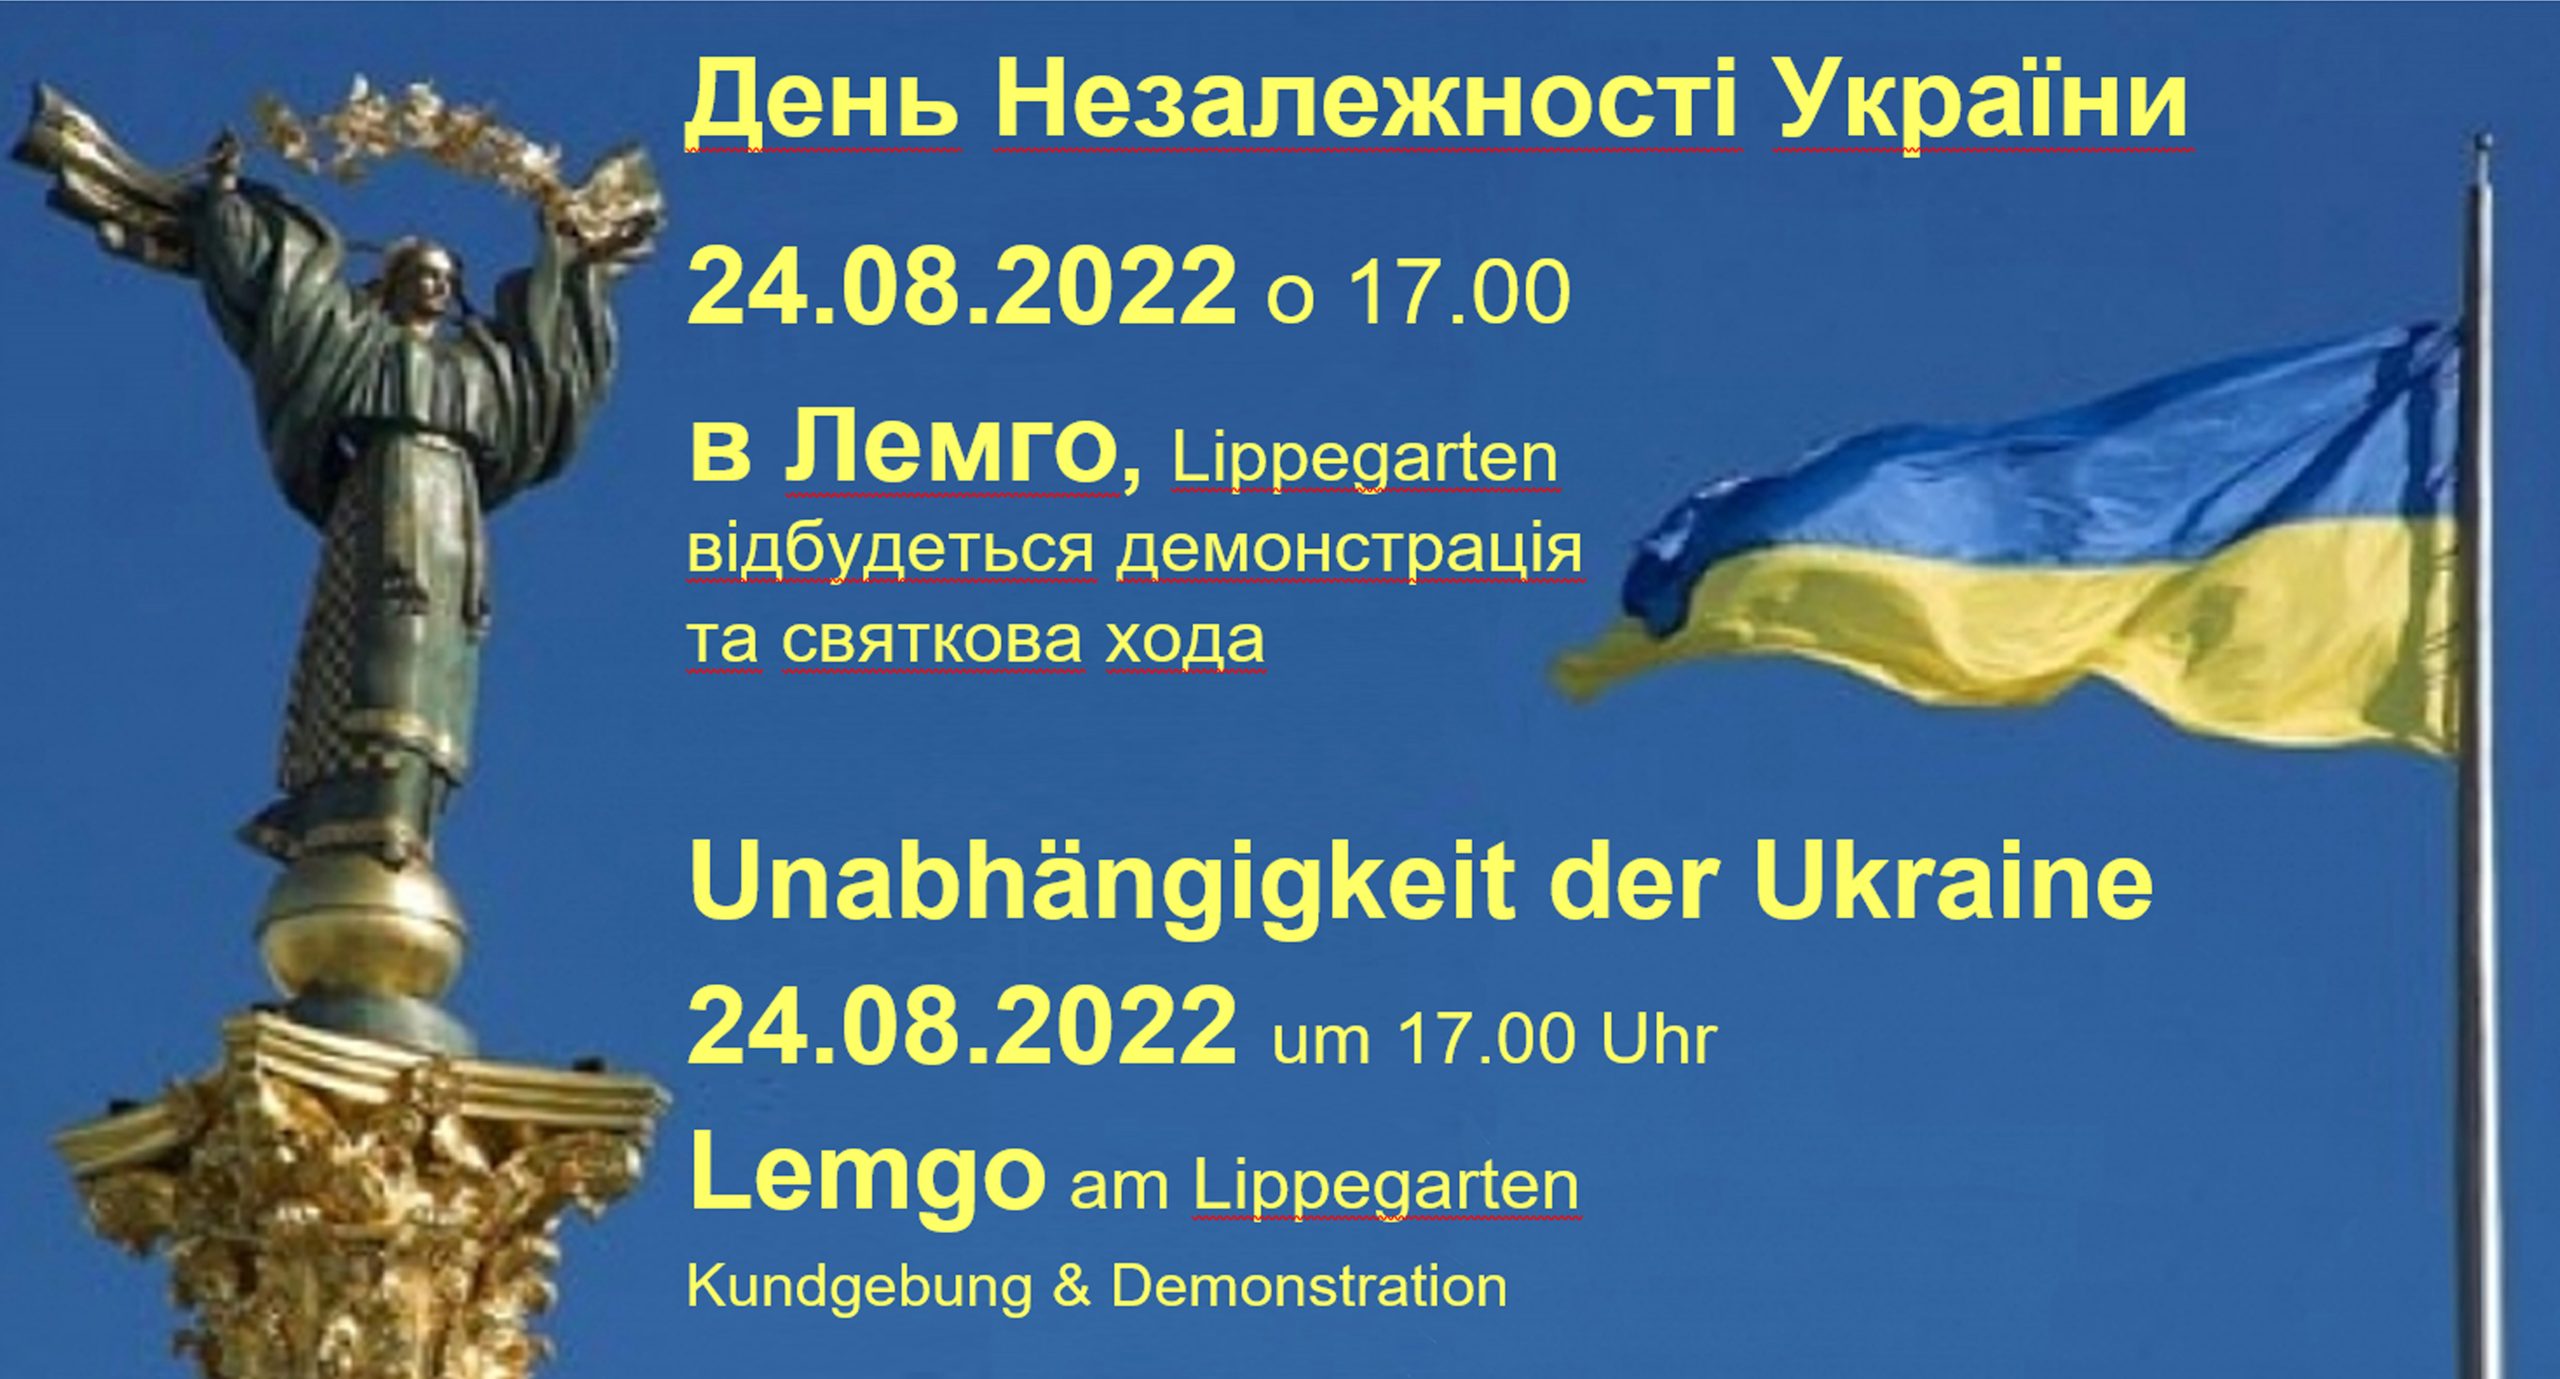 Eine Statue und die ukrainische Flagge vor blauem Himmel. Text auf ukrainisch und deutsch zur im Beitrag erwähnten Kundgebung und Demonstration „Unabhängigkeit der Ukraine“